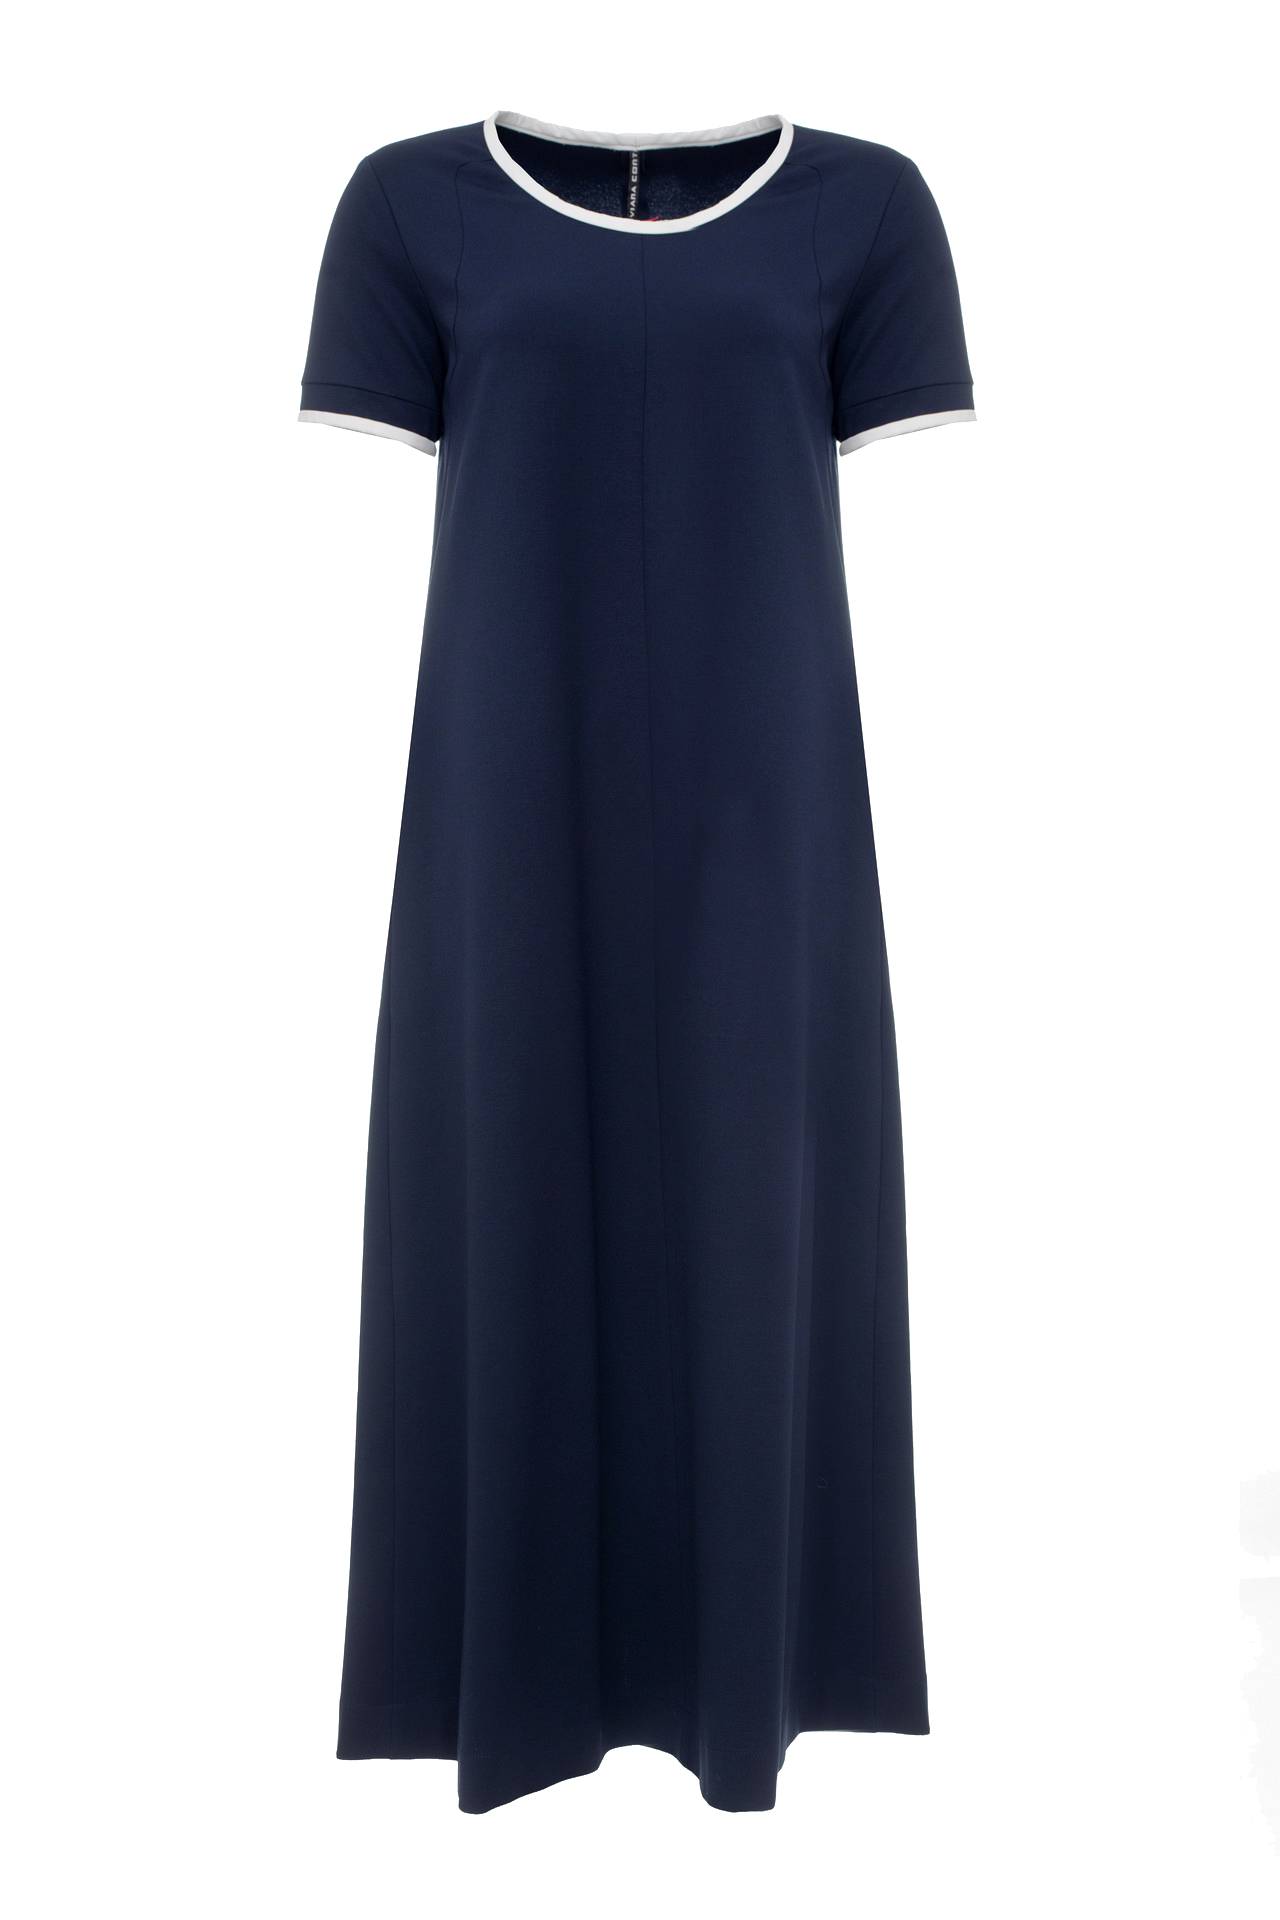 Одежда женская Платье LIVIANA CONTI (F6E142/16.2). Купить за 10250 руб.